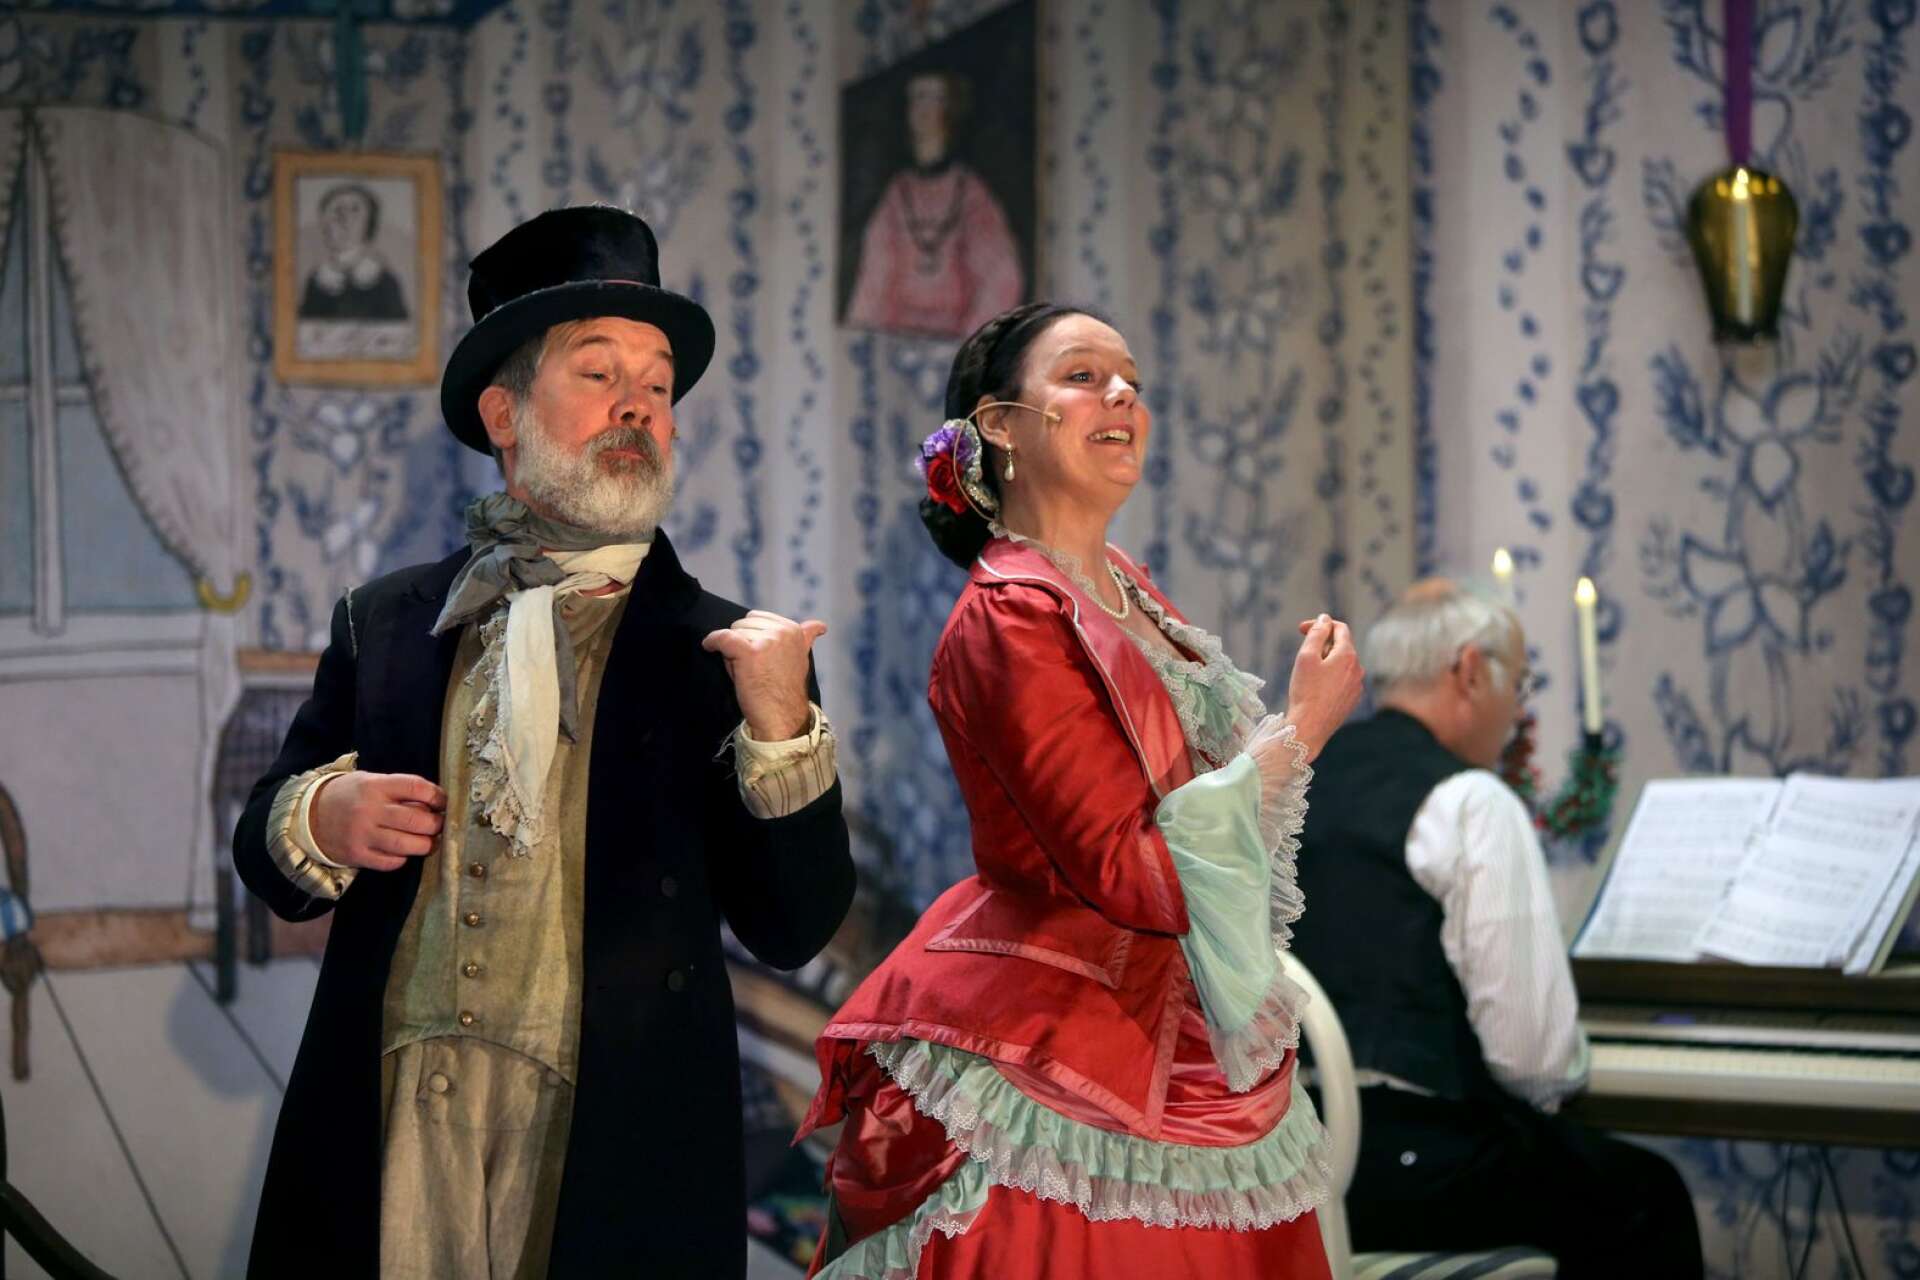 I rollen som Löparnisse ses Fredrik Sjöstedt och Britta i Gyllby gestaltas av Maria Mayer. Scenografin är skapad utifrån en målning av 1800-talsmålaren Josabeth Sjöberg.